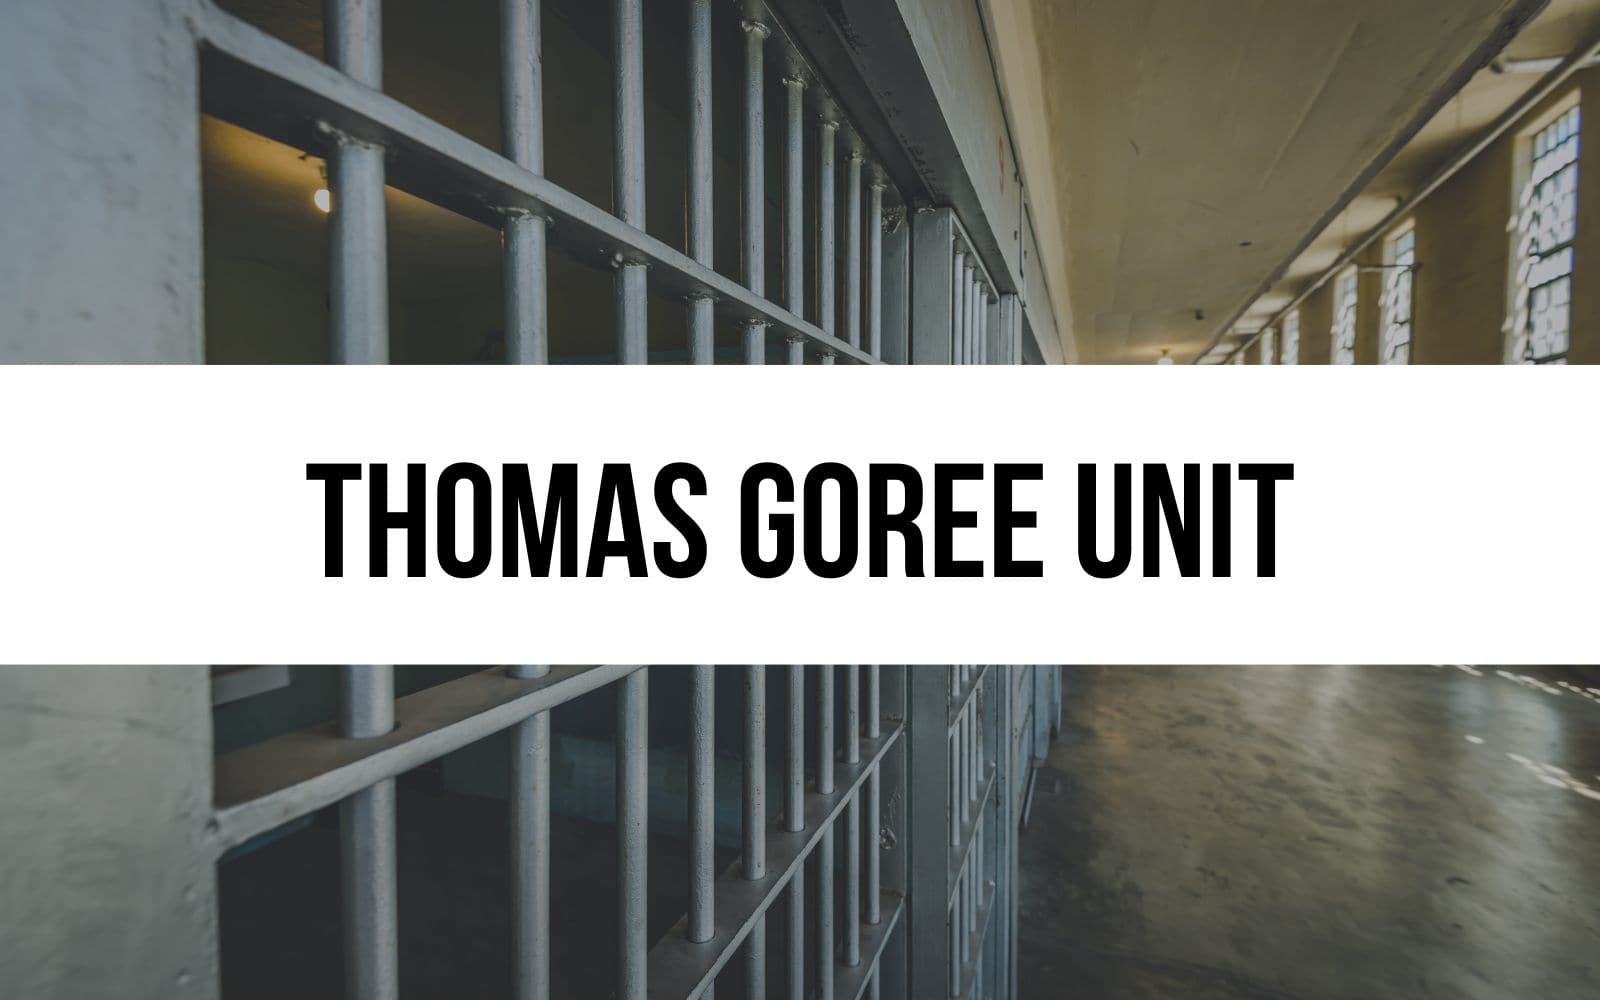 Thomas Goree Unit